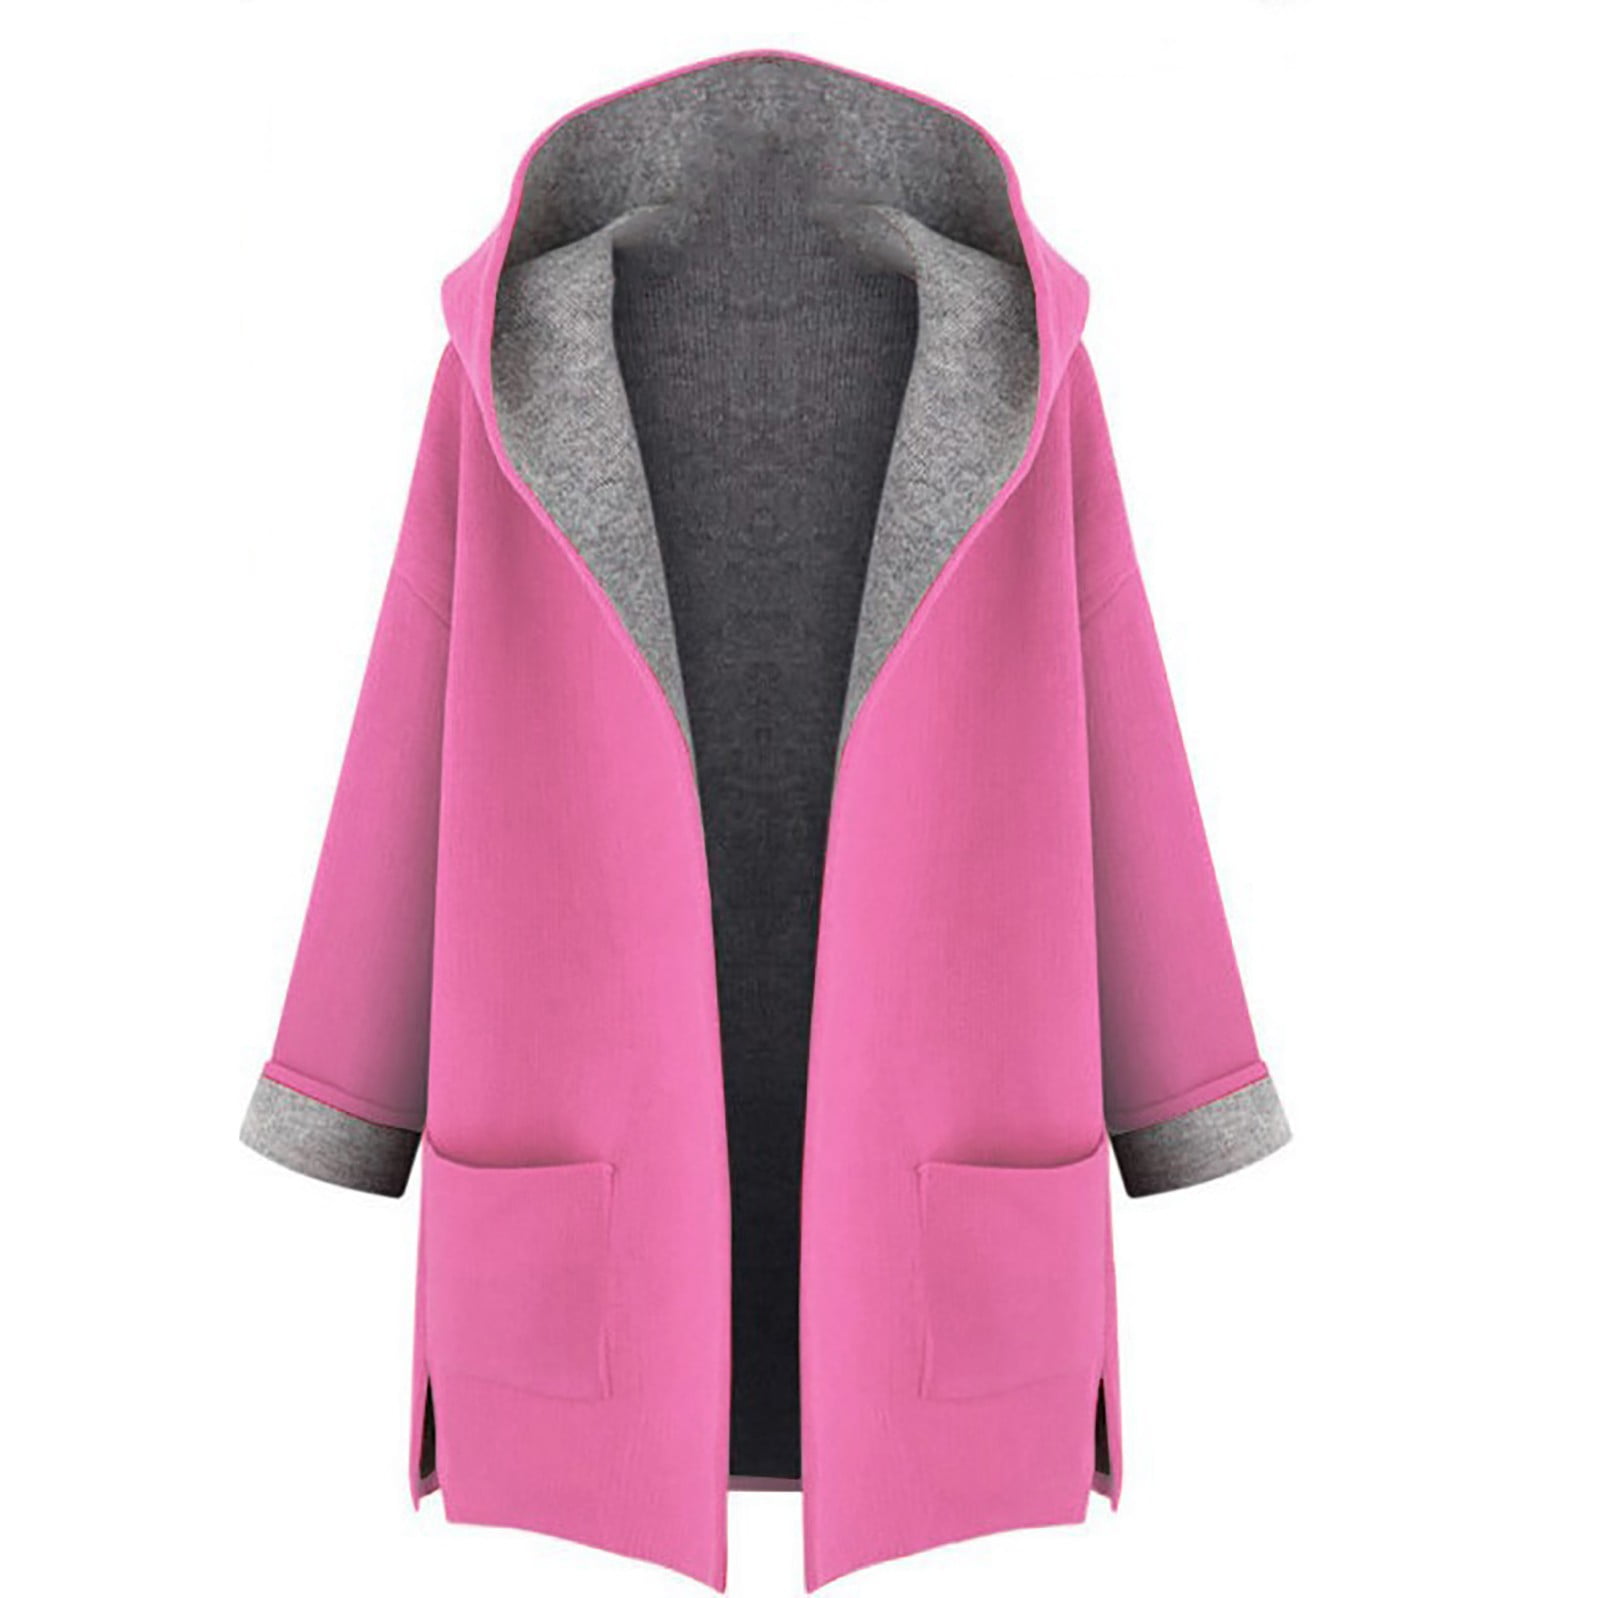 SELONE Pea Coats for Womens Fleece Long Sleeve Jacket Plus Size Hooded ...